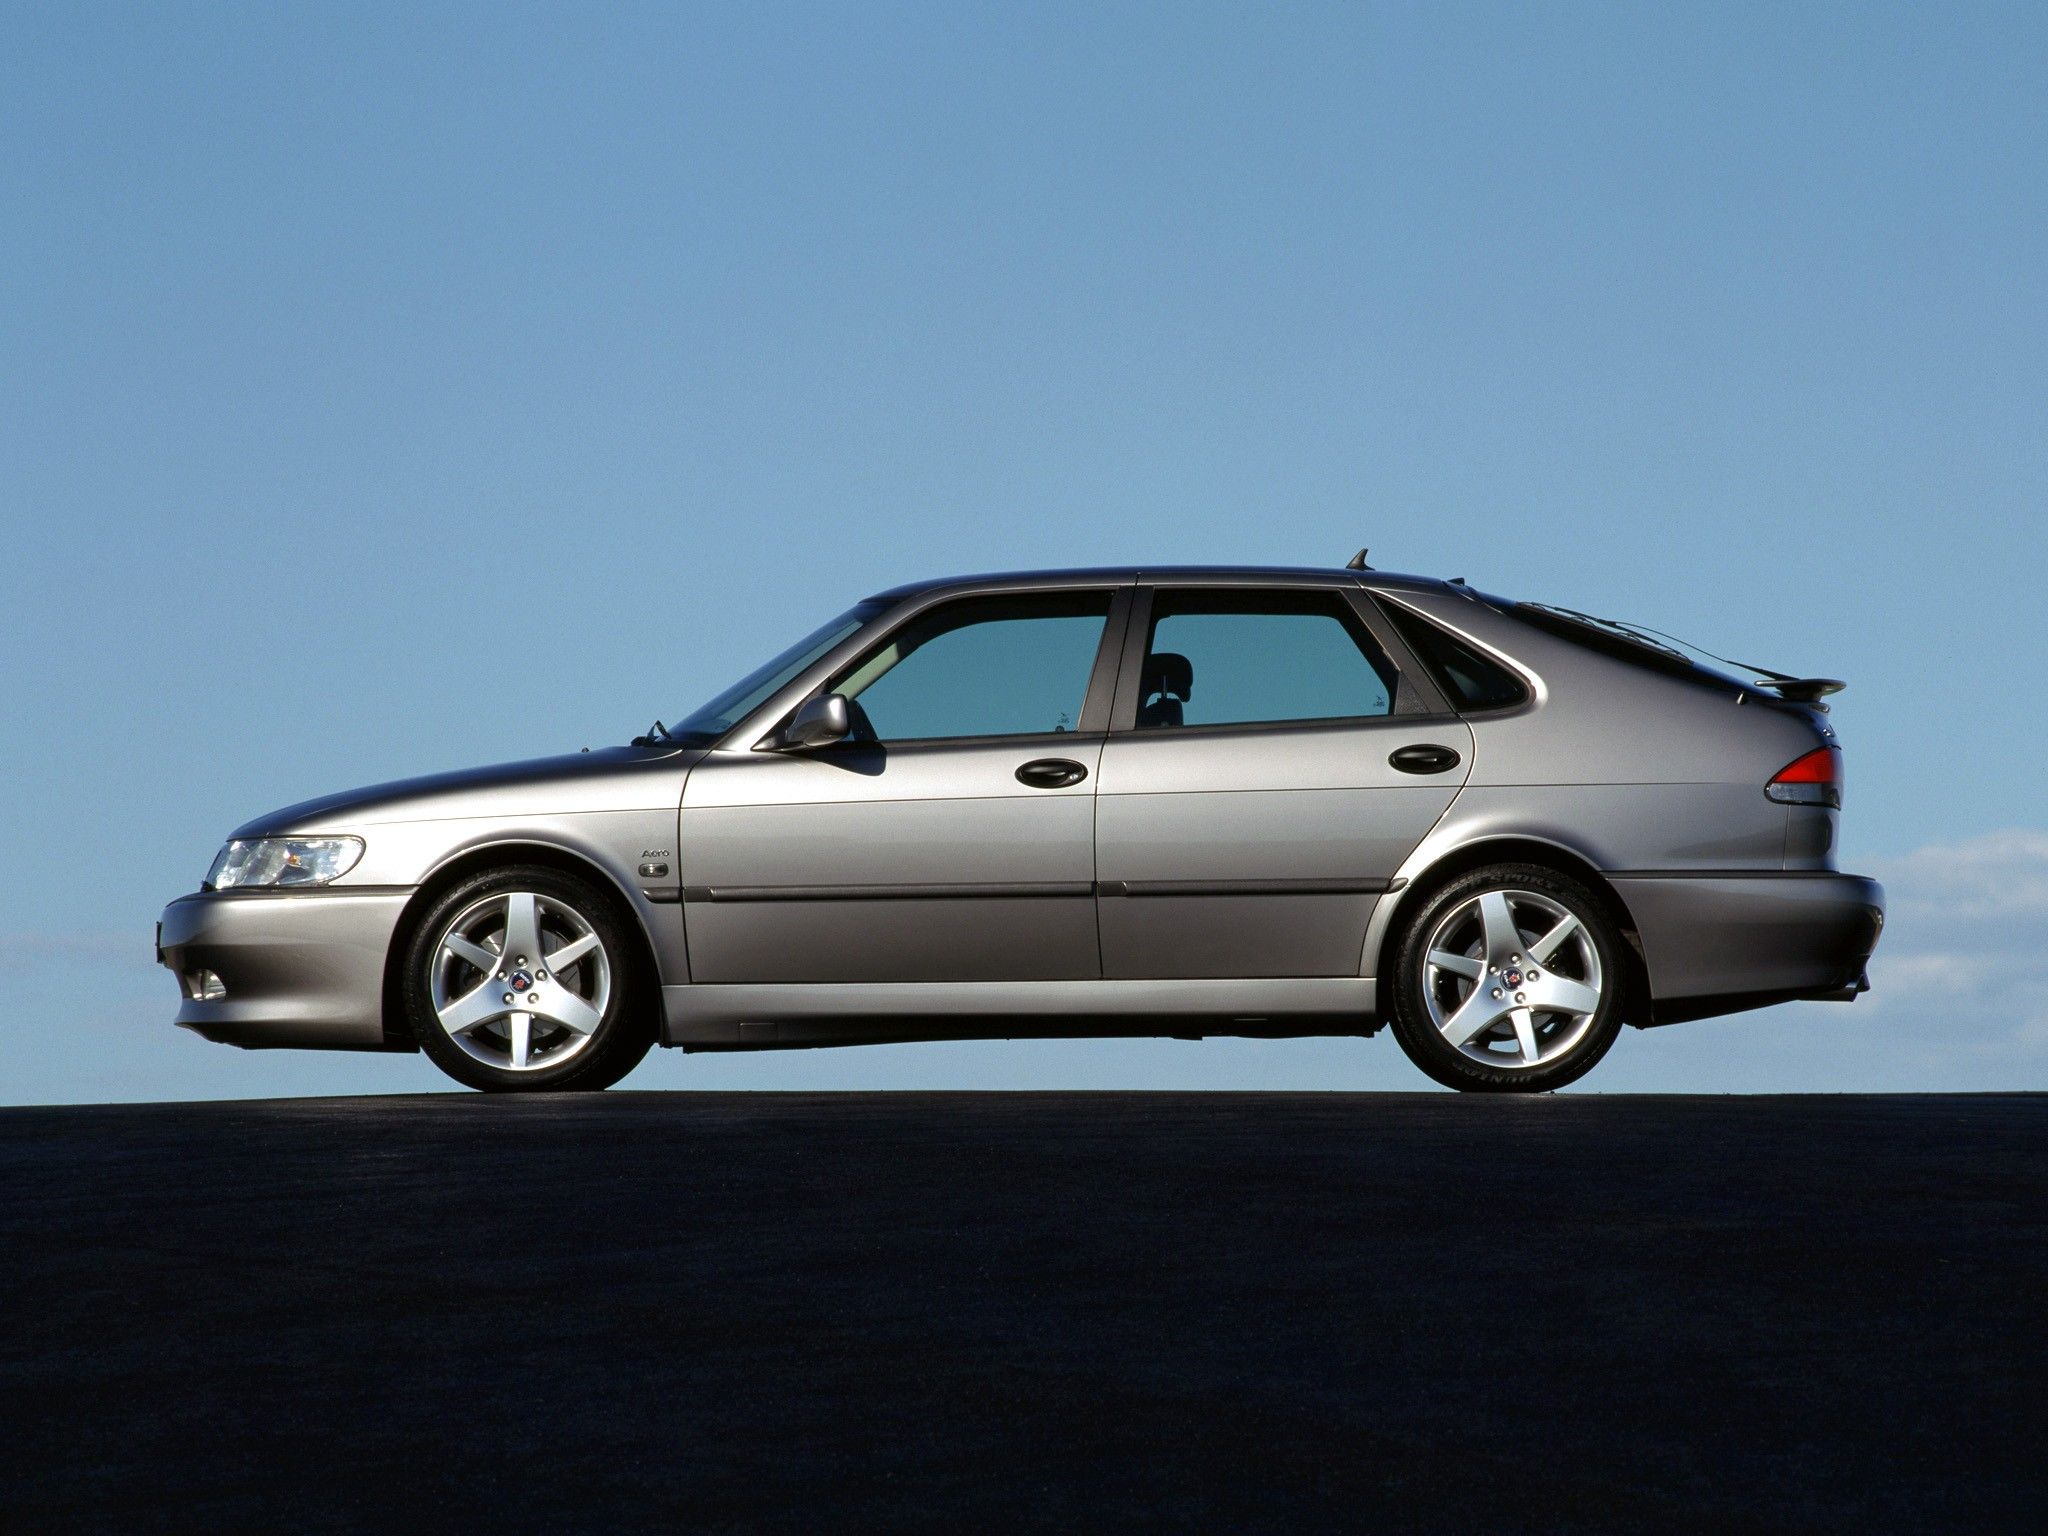 First Drive: 1999 Saab 93